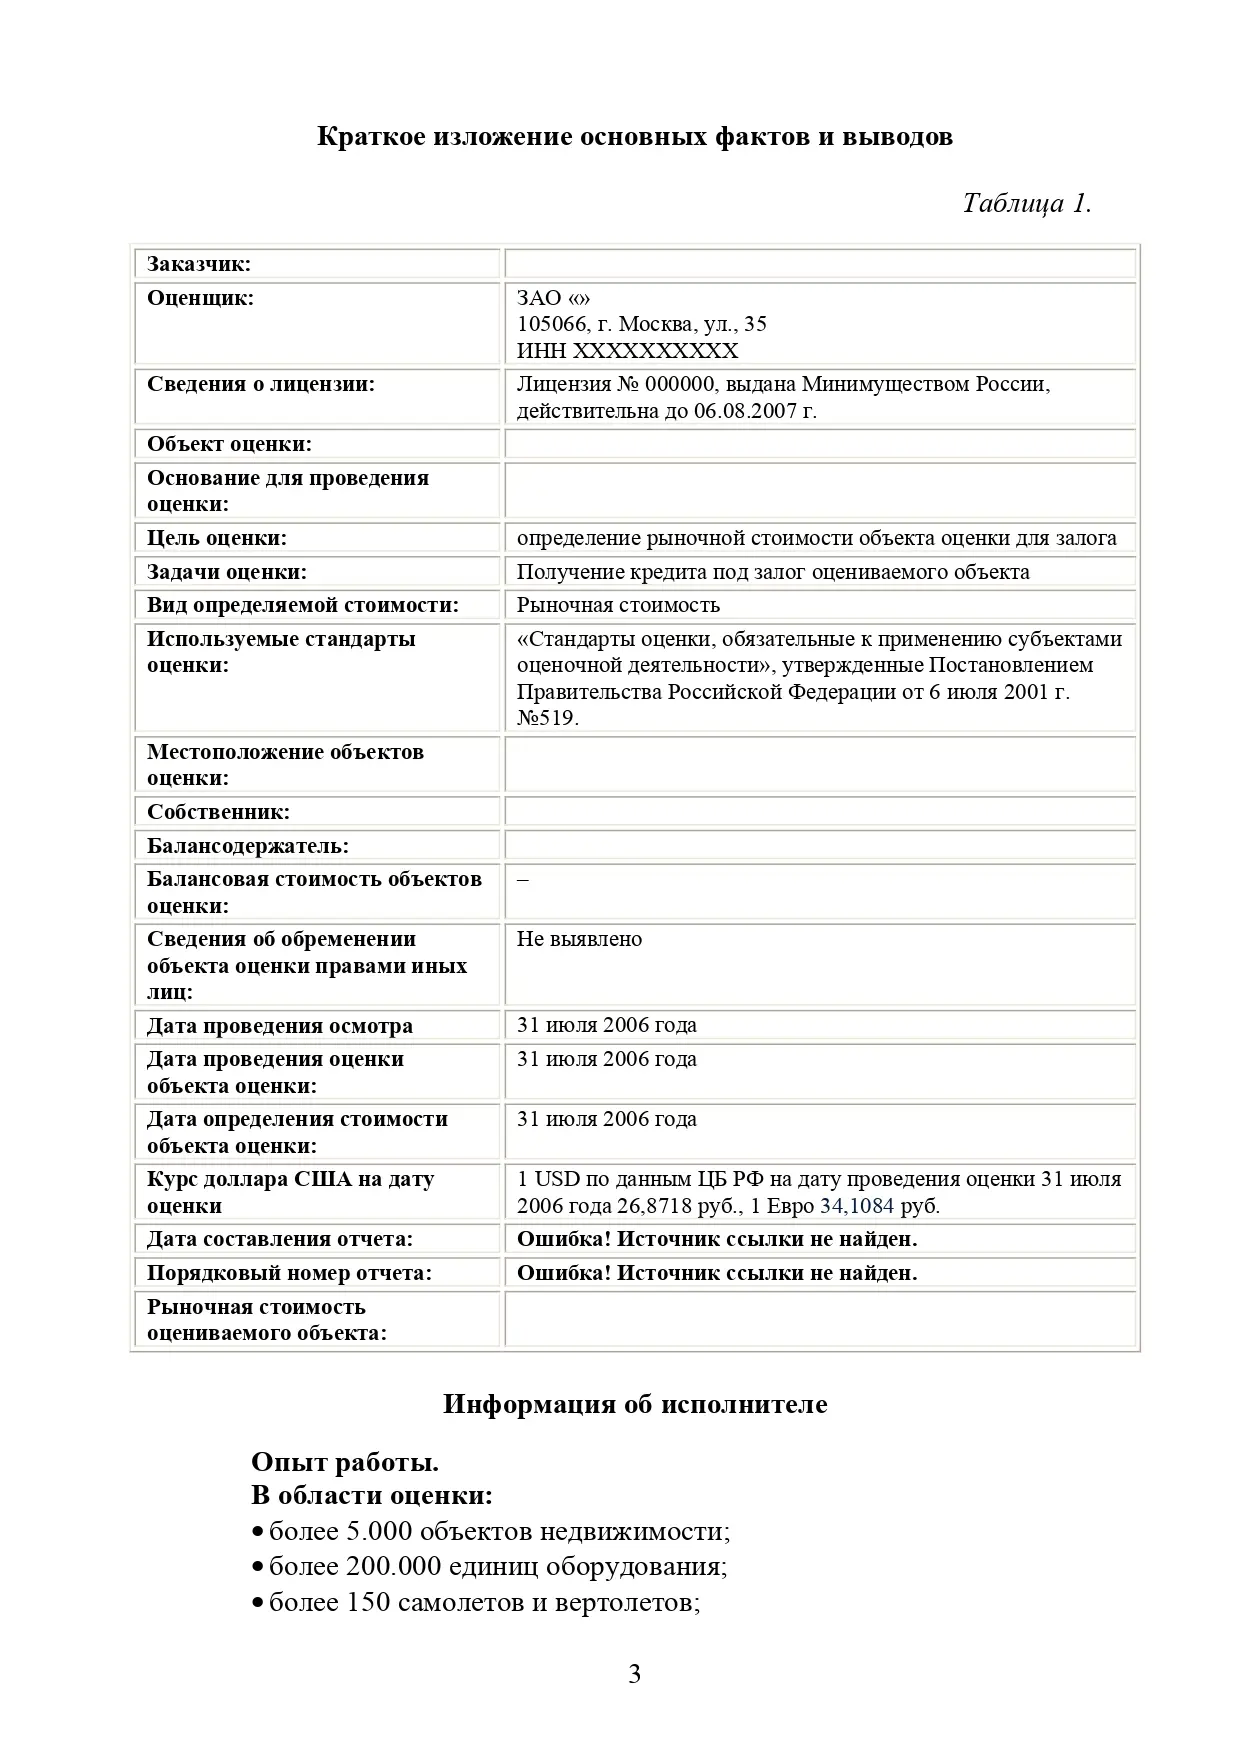 страница 3 отчета рыночной оценки оборудования литейного завода